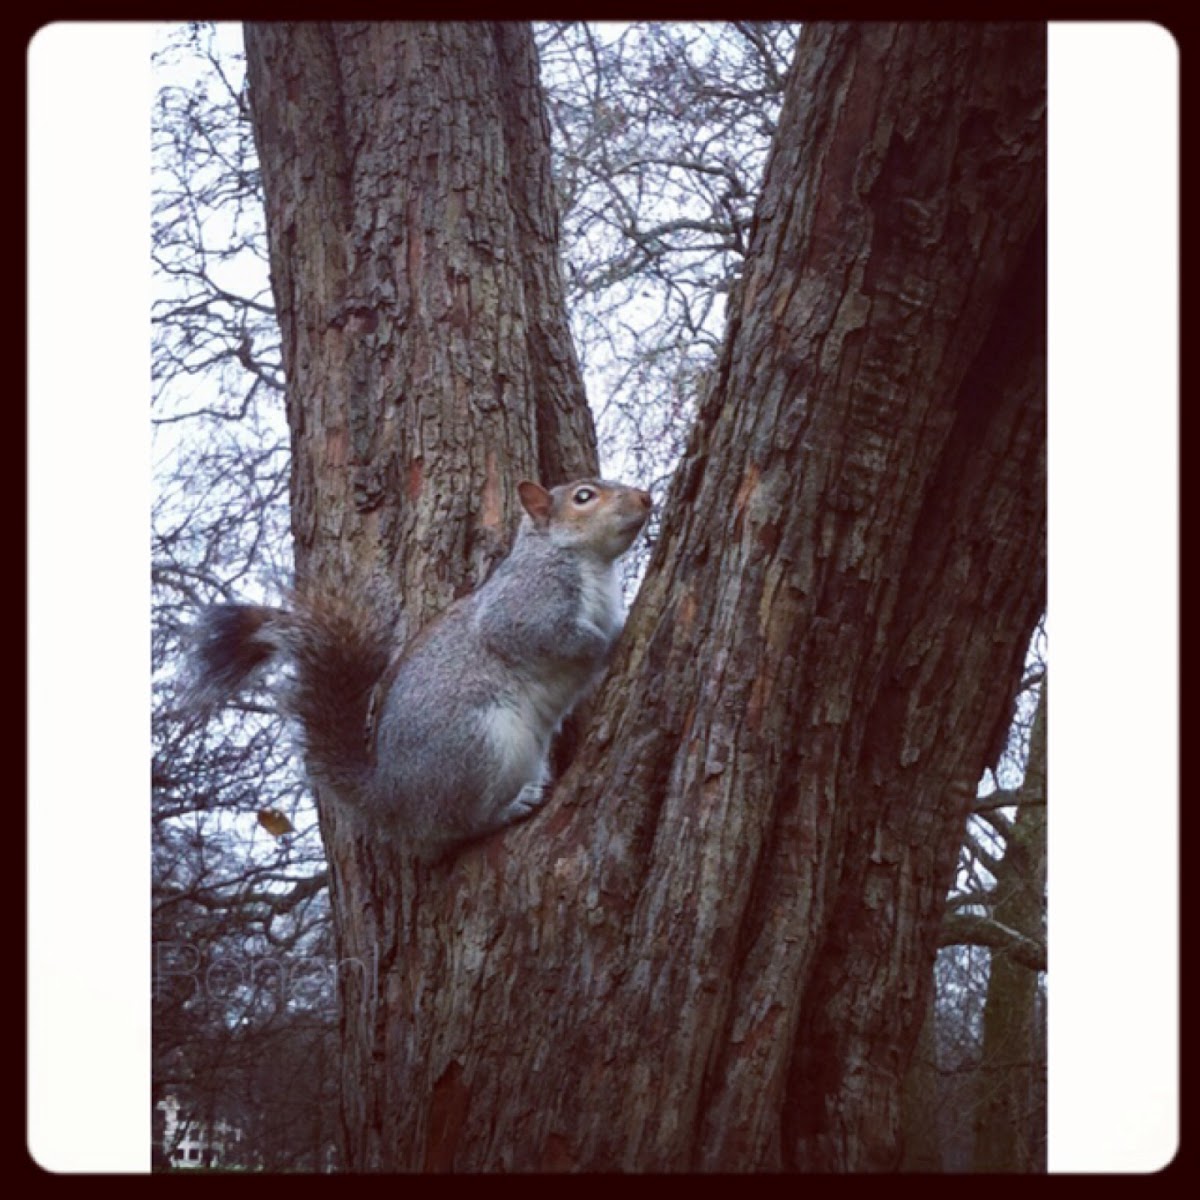 Eastern grey squirrel